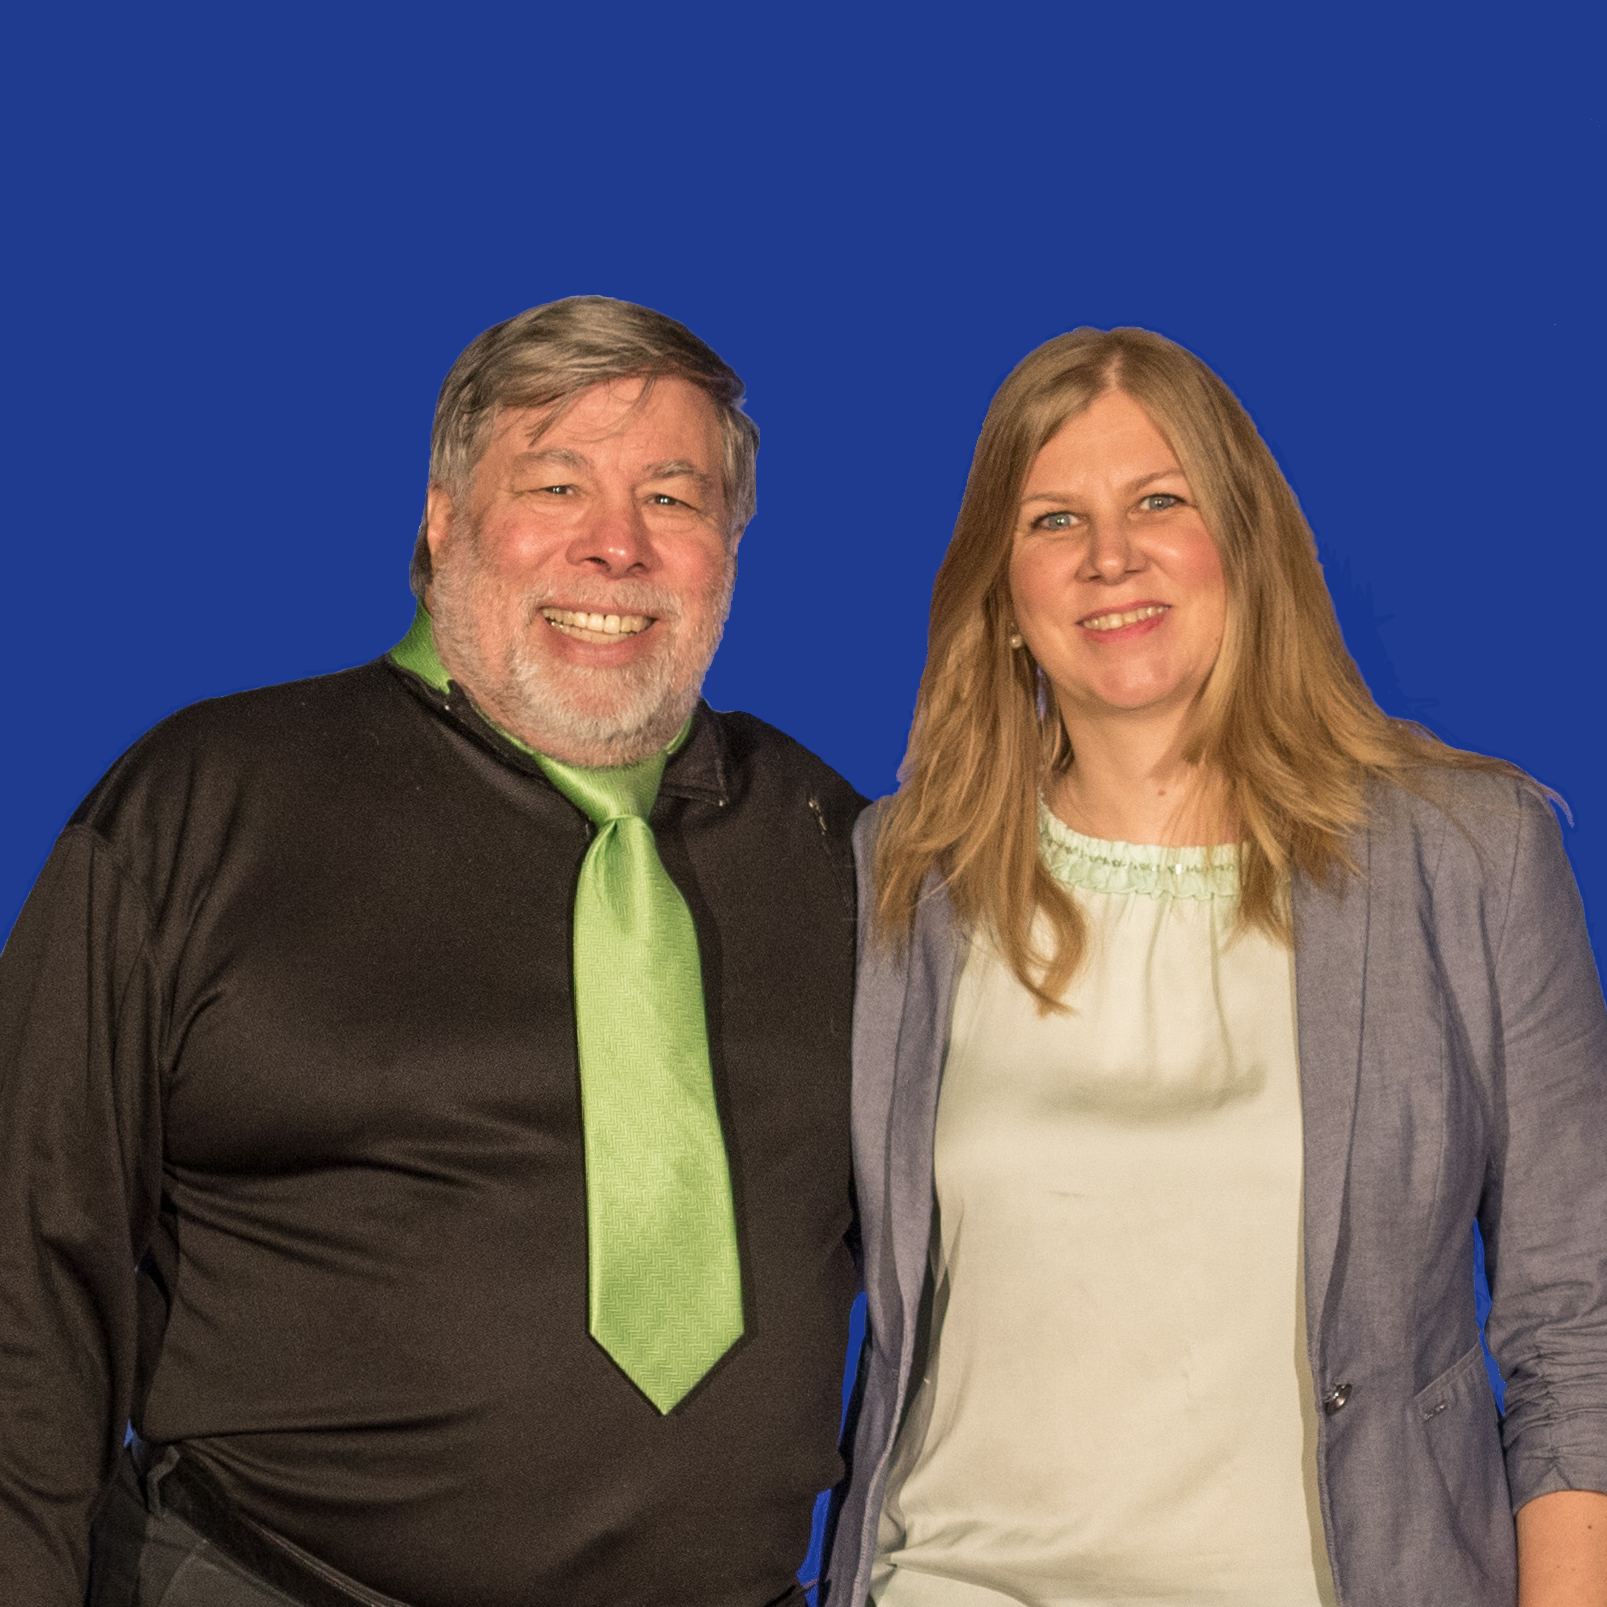 Cheryl Heusser and Steve Wozniak